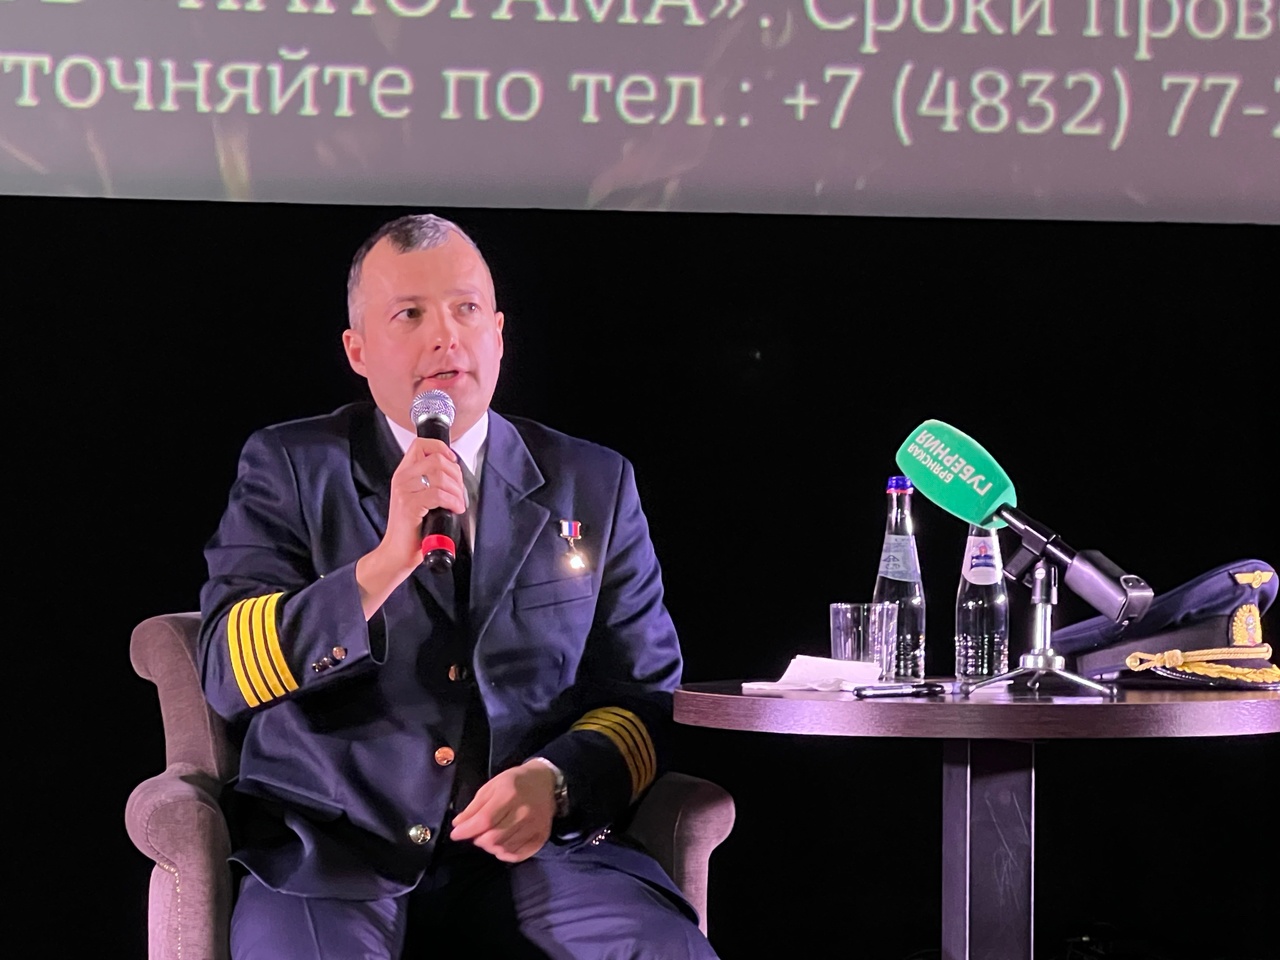 Пилот Дамир Юсупов, спасший более 200 человек посетил в Брянске премьеру фильма «На солнце вдоль рядов кукурузы»